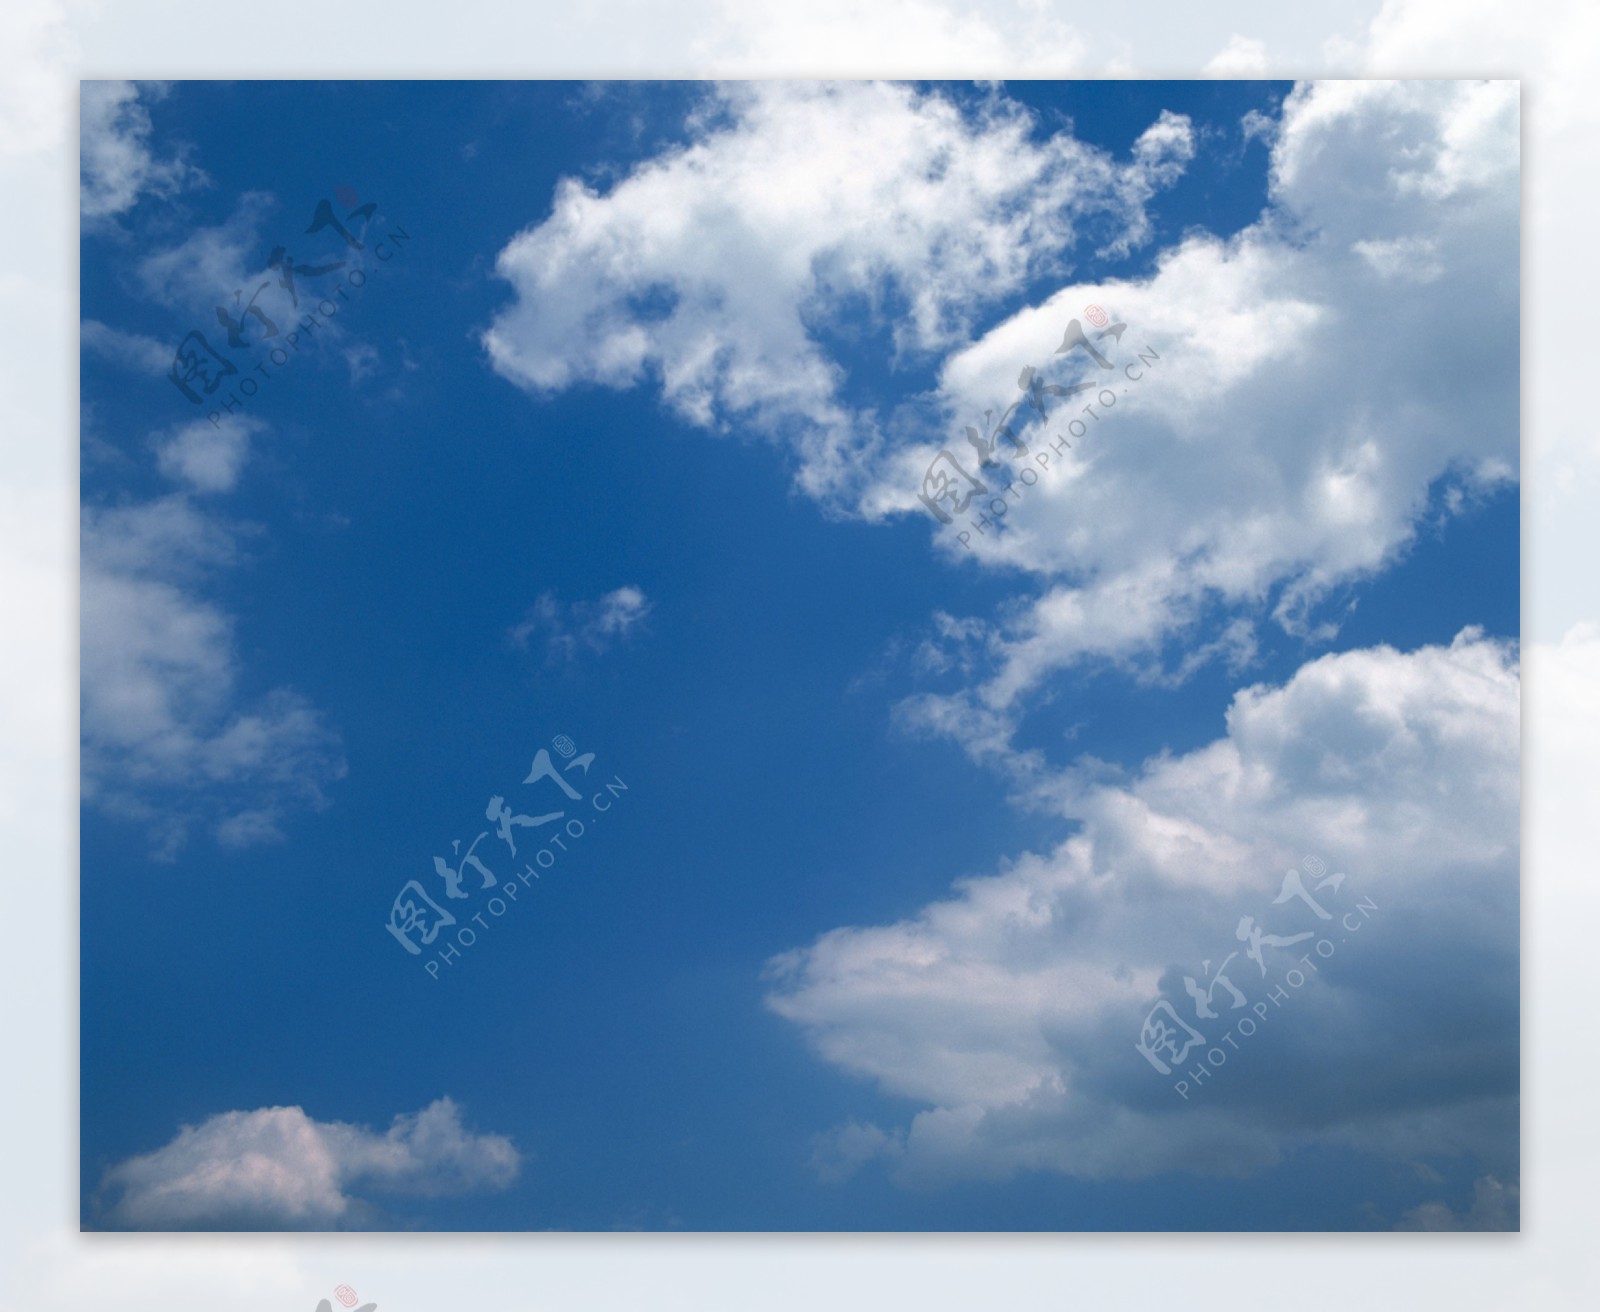 摄影自然景观天空云彩雨过天晴蓝天白云朵朵